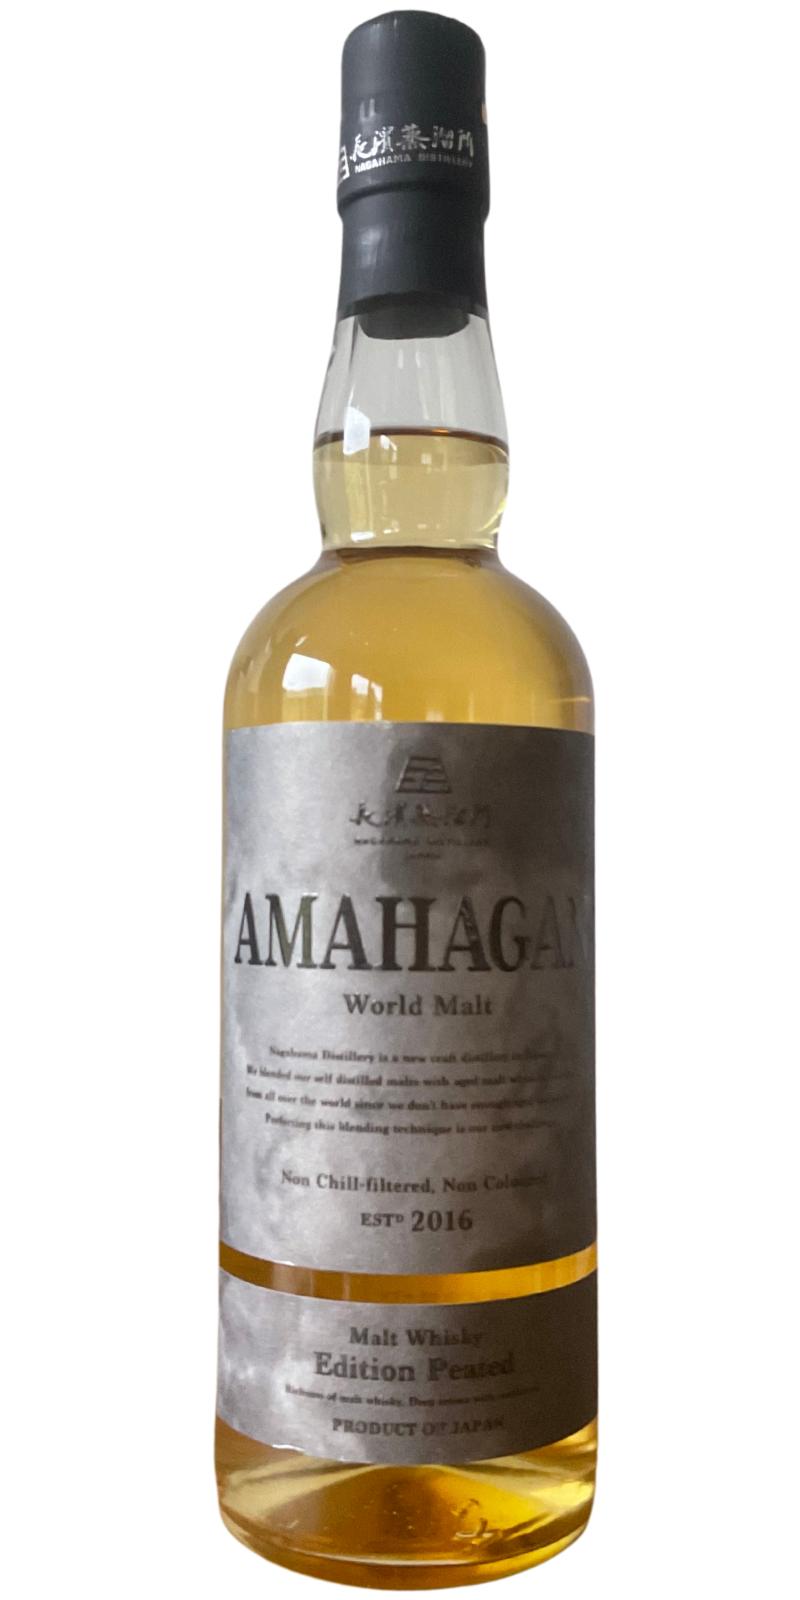 Amahagan World Malt